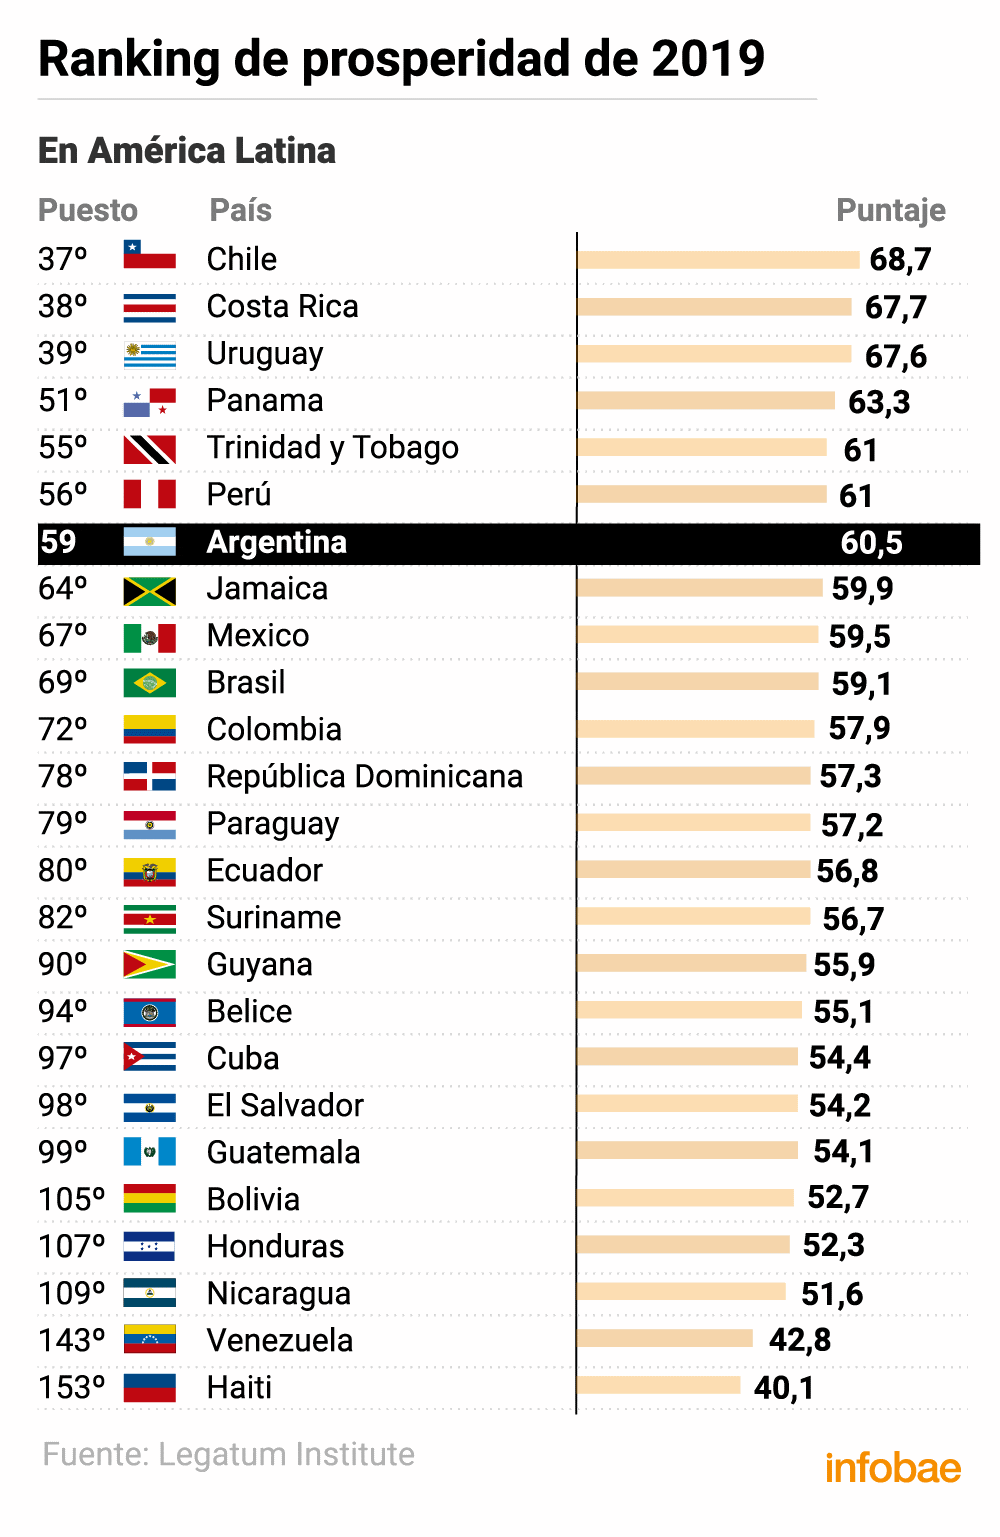 Argentina ocupó el puesto número 59 y se ubicó séptimo en el ranking regional